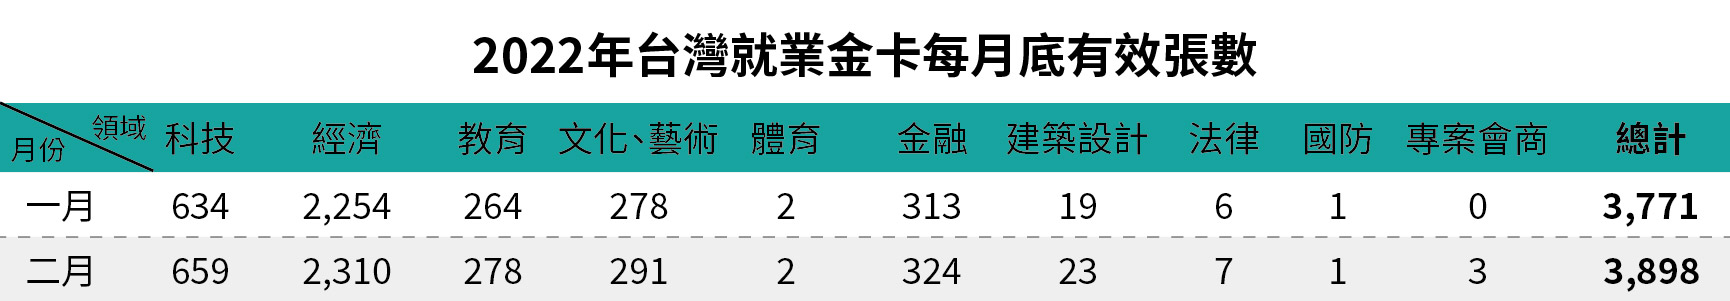 2022年台灣就業金卡每月底有效張數-二月